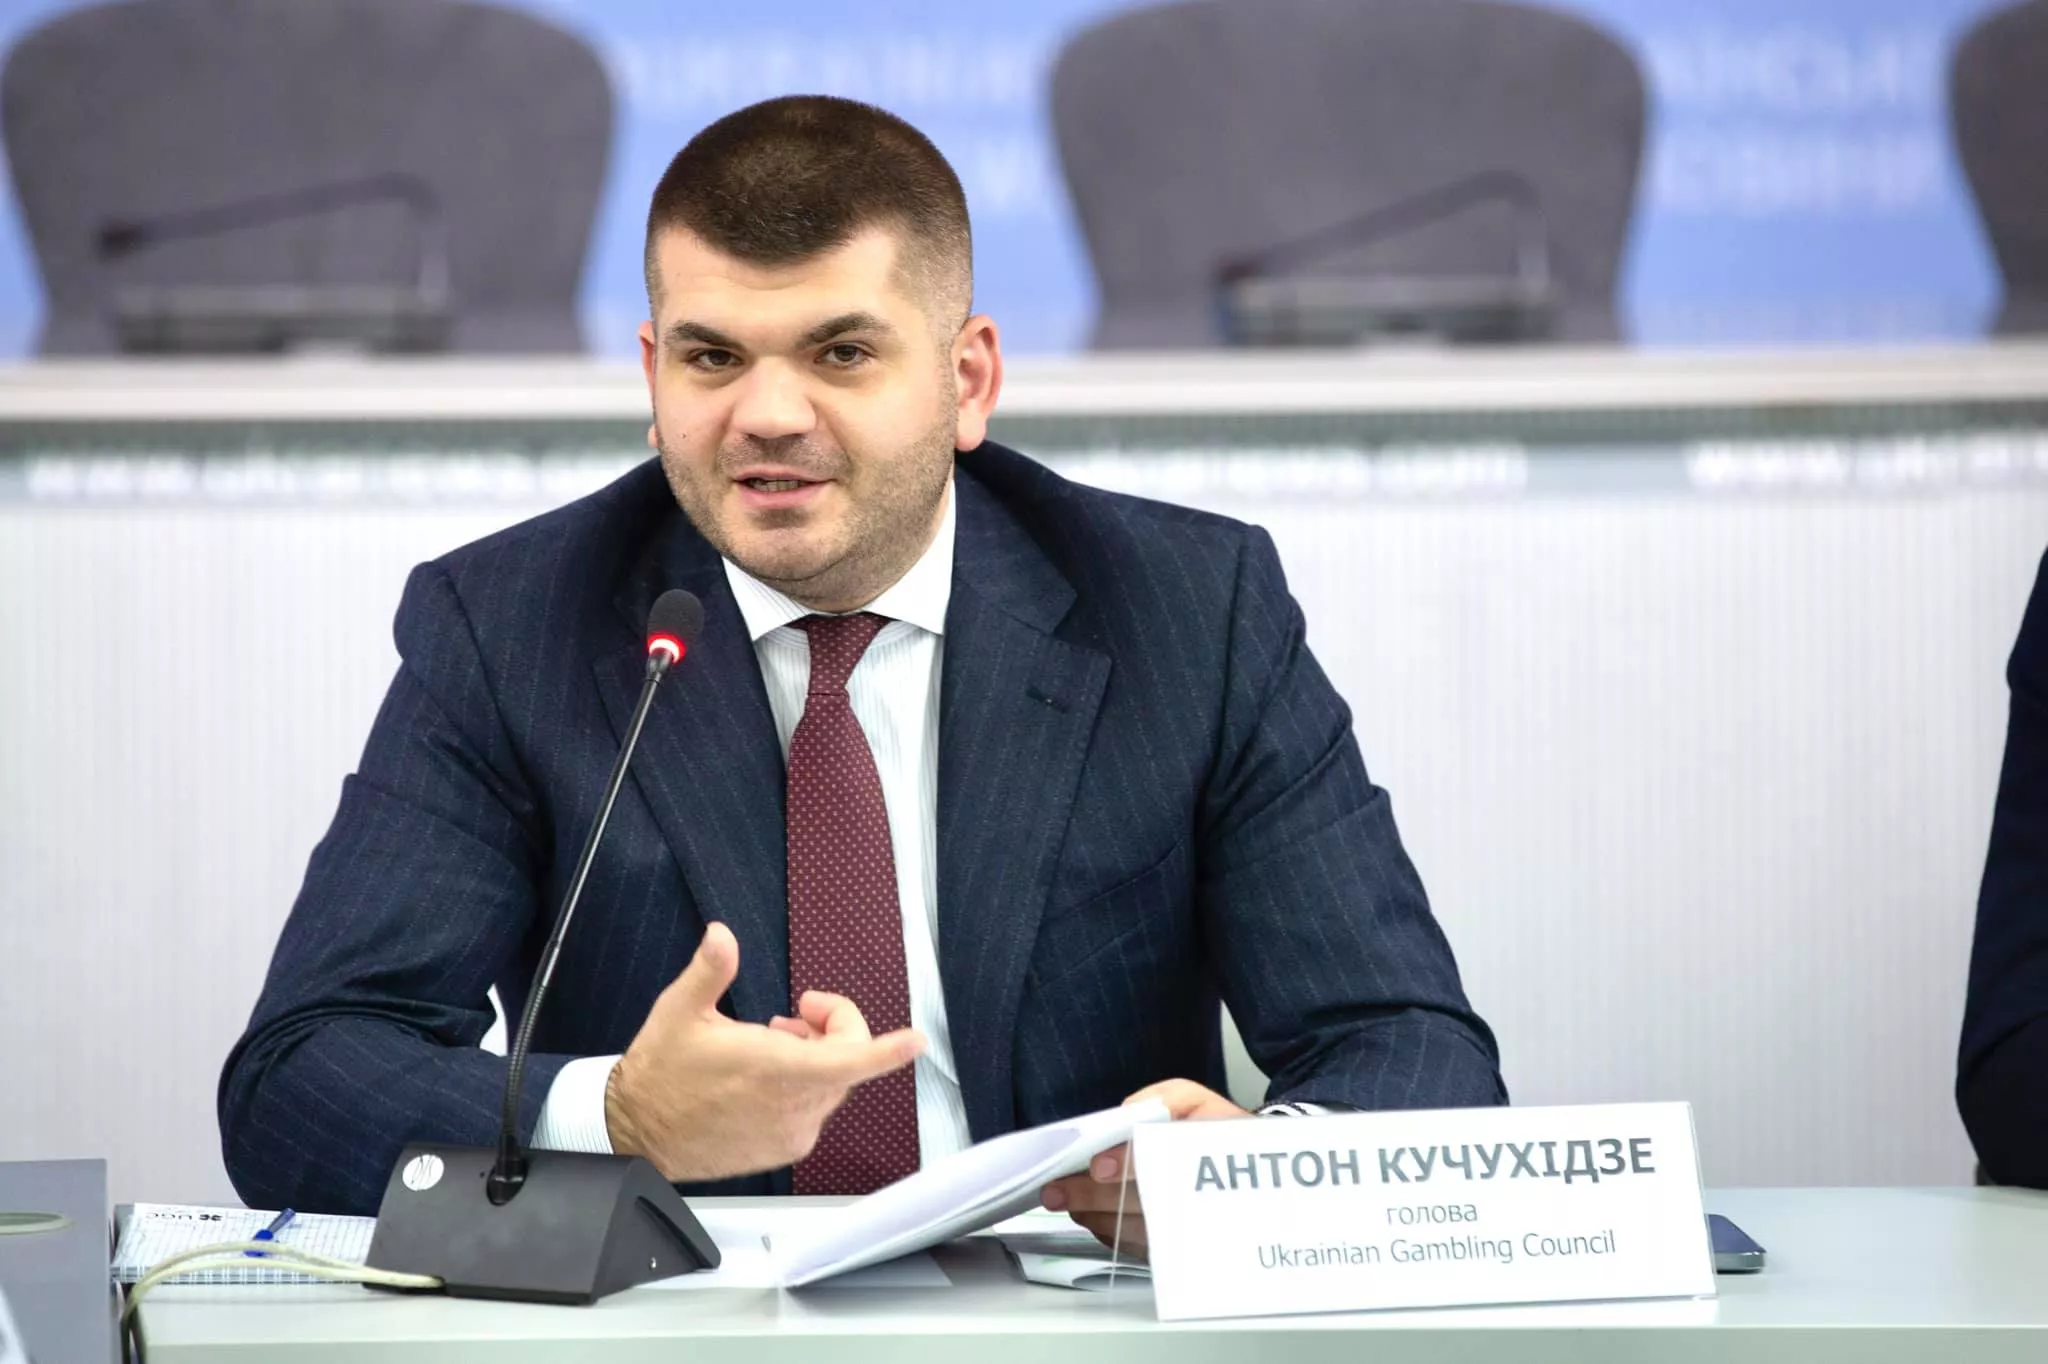 Антон Кучухіддзе: "Скандал мав внести розбіжності в об'єднаному Заході, налаштувавши Європу проти США та України"